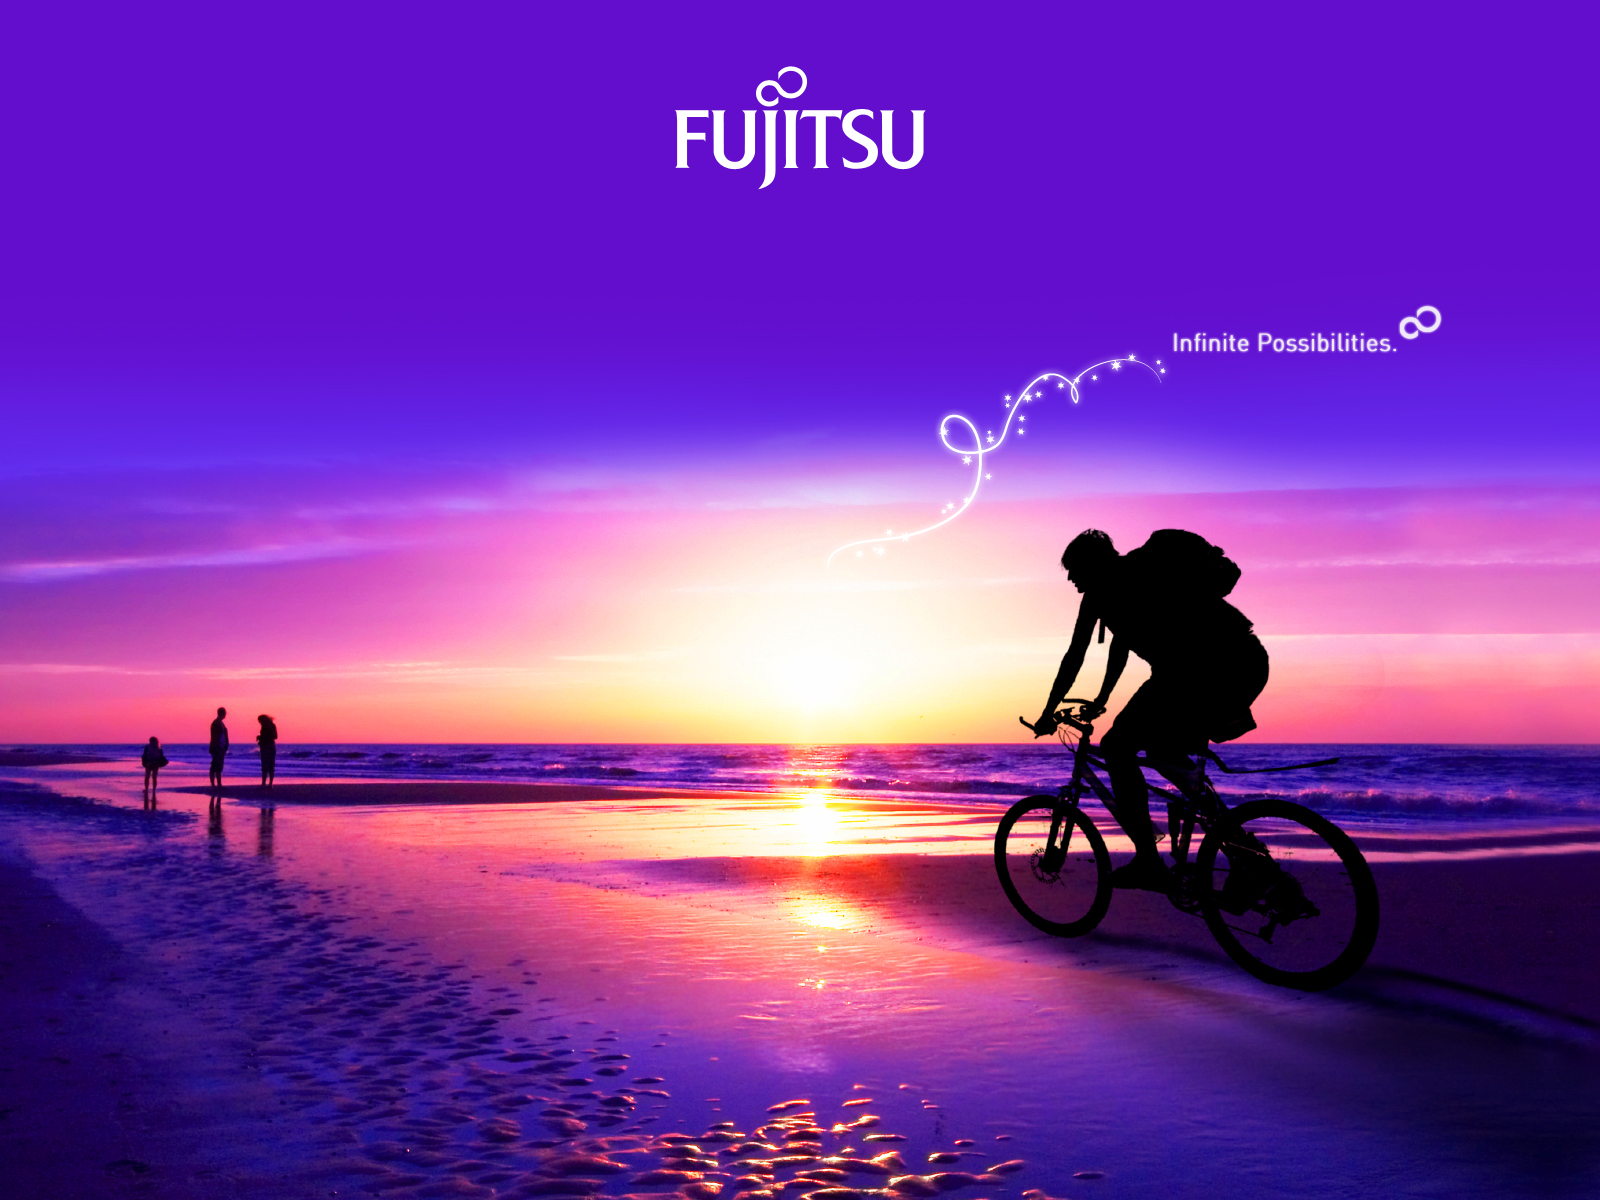 Los mejores fondos de pantalla de Fujitsu para la pantalla del teléfono